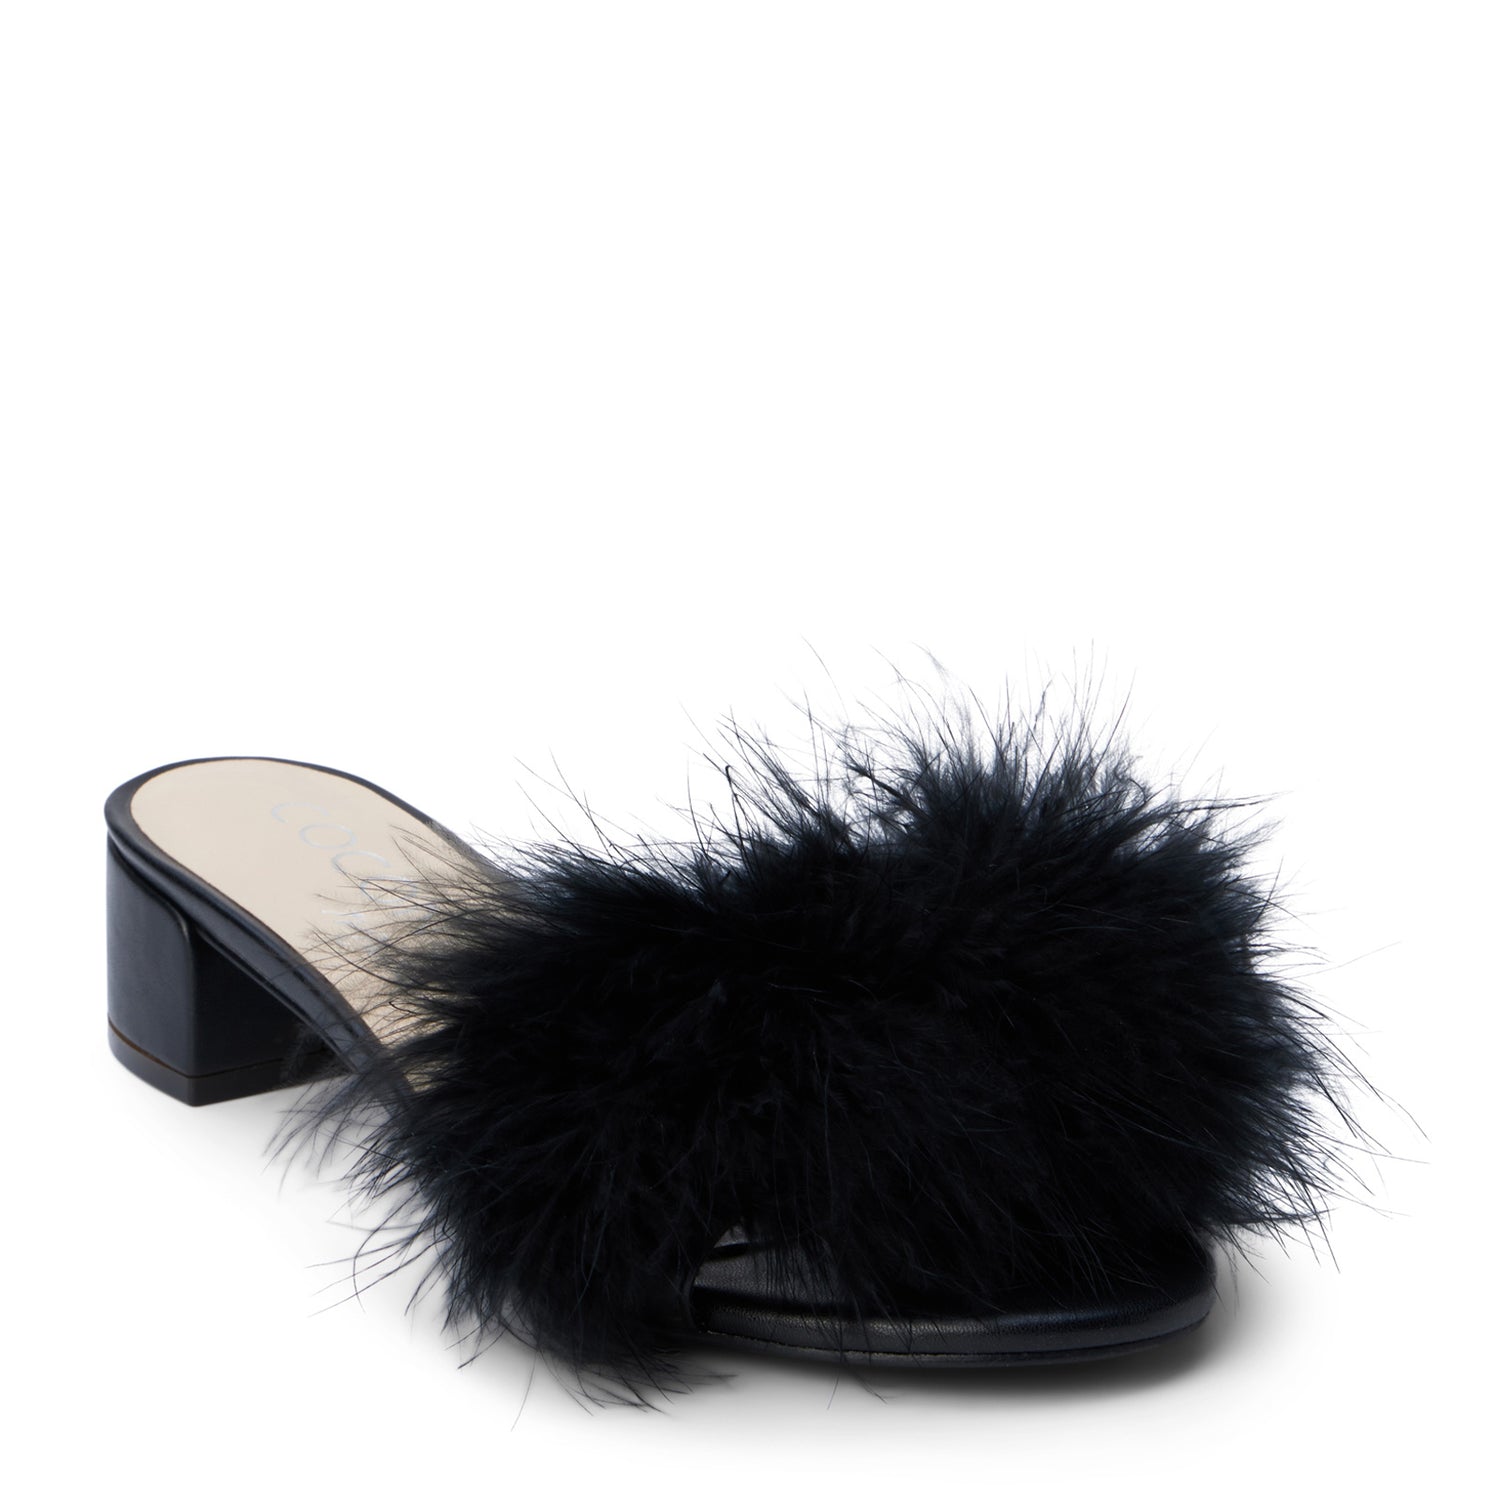 Peltz Shoes  Coconuts by Matisse Olivia Slide BLACK OLIVIA BLACK